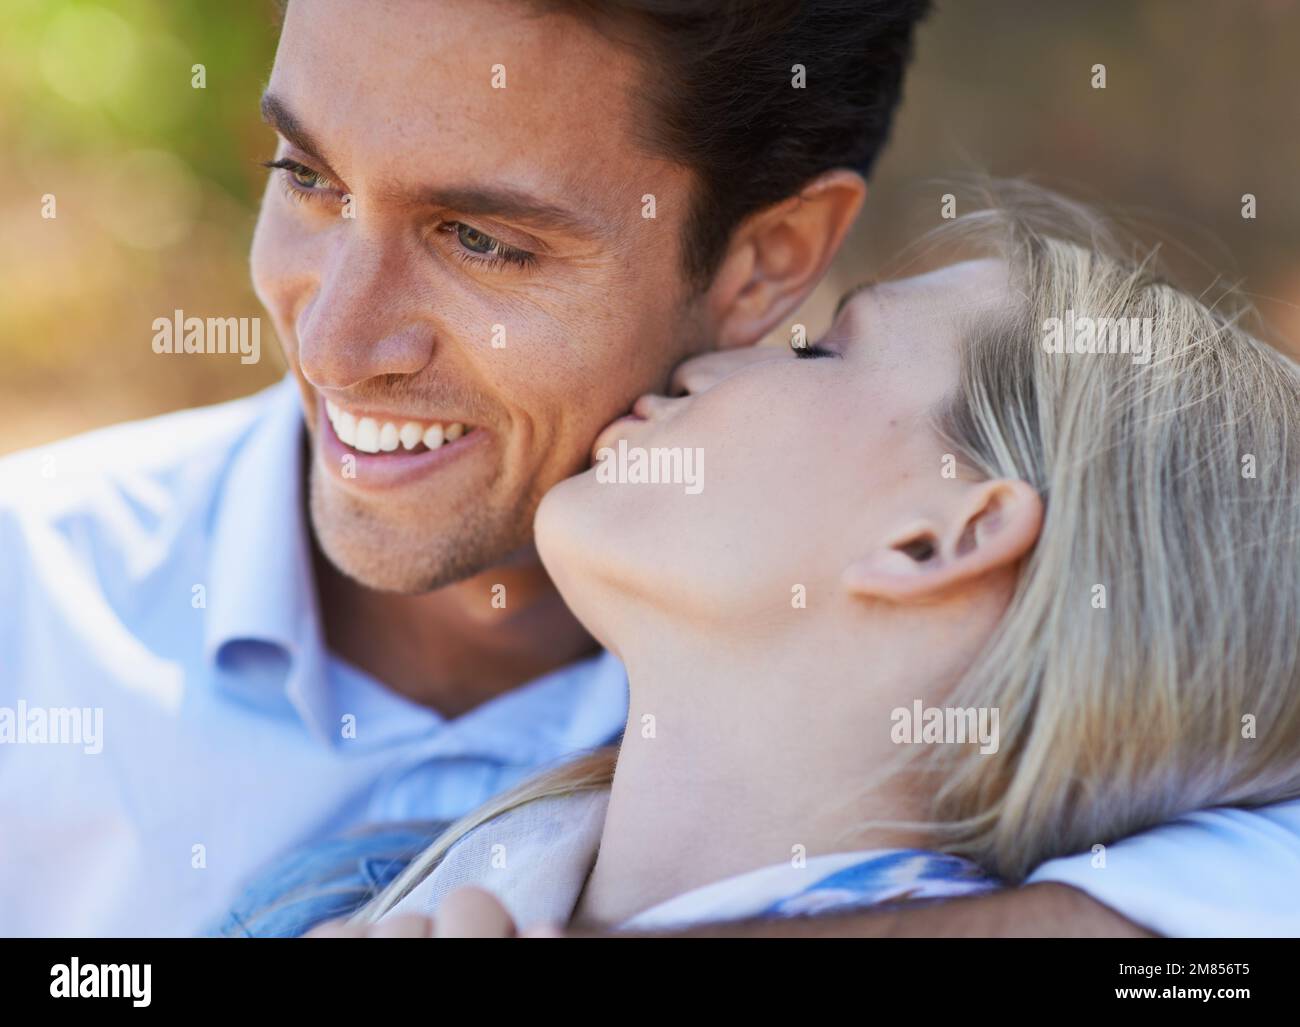 Elle se baise dans son adoration. Gros plan d'un jeune couple romantique montrant son affection à l'extérieur. Banque D'Images